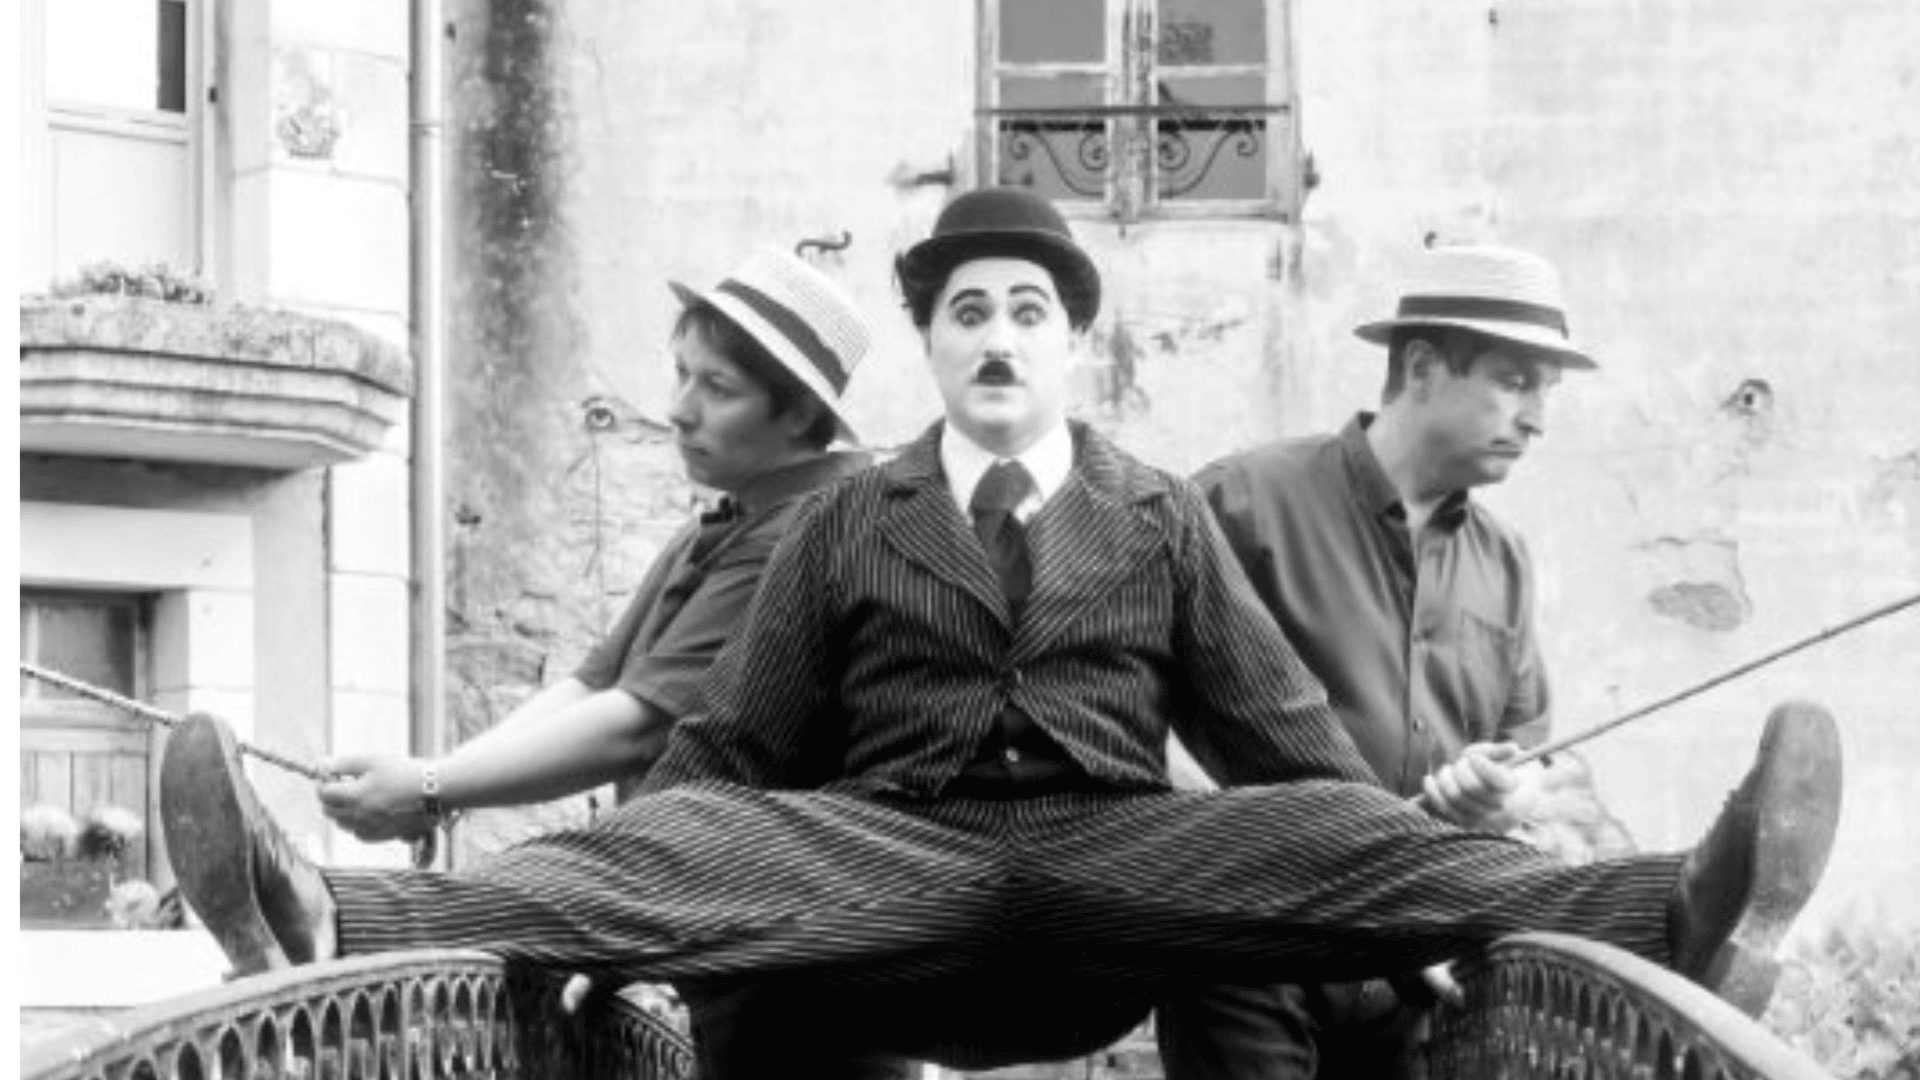 Ce week-end, laissez-vous transporter dans l’univers de Charlie Chaplin au sein de la Forge gourmande !